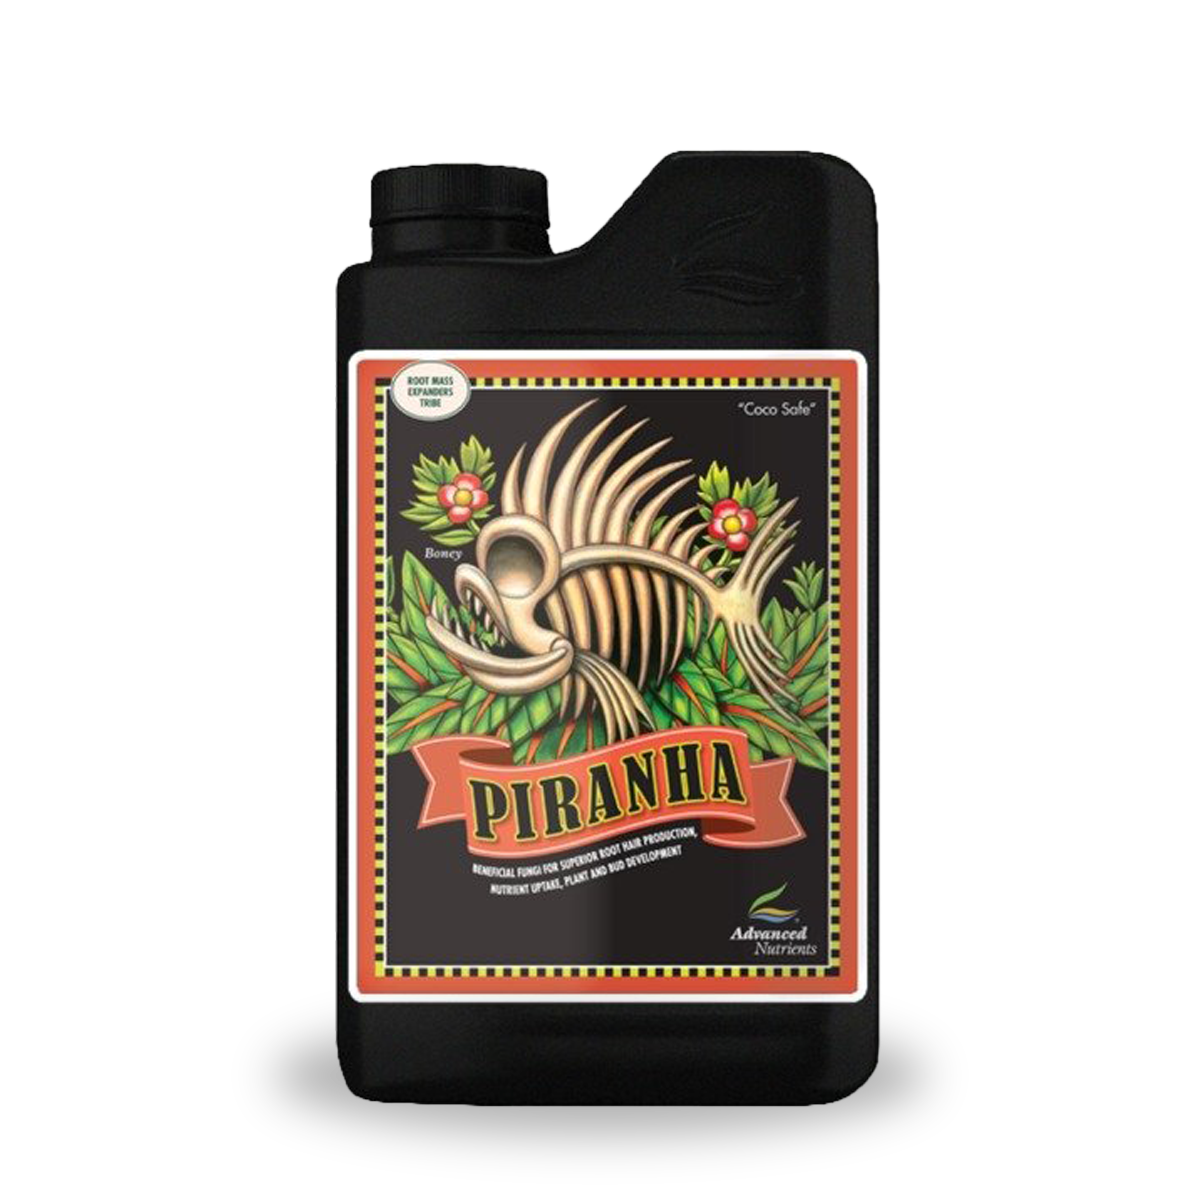 Piranha პირანია - Advanced Nutrients